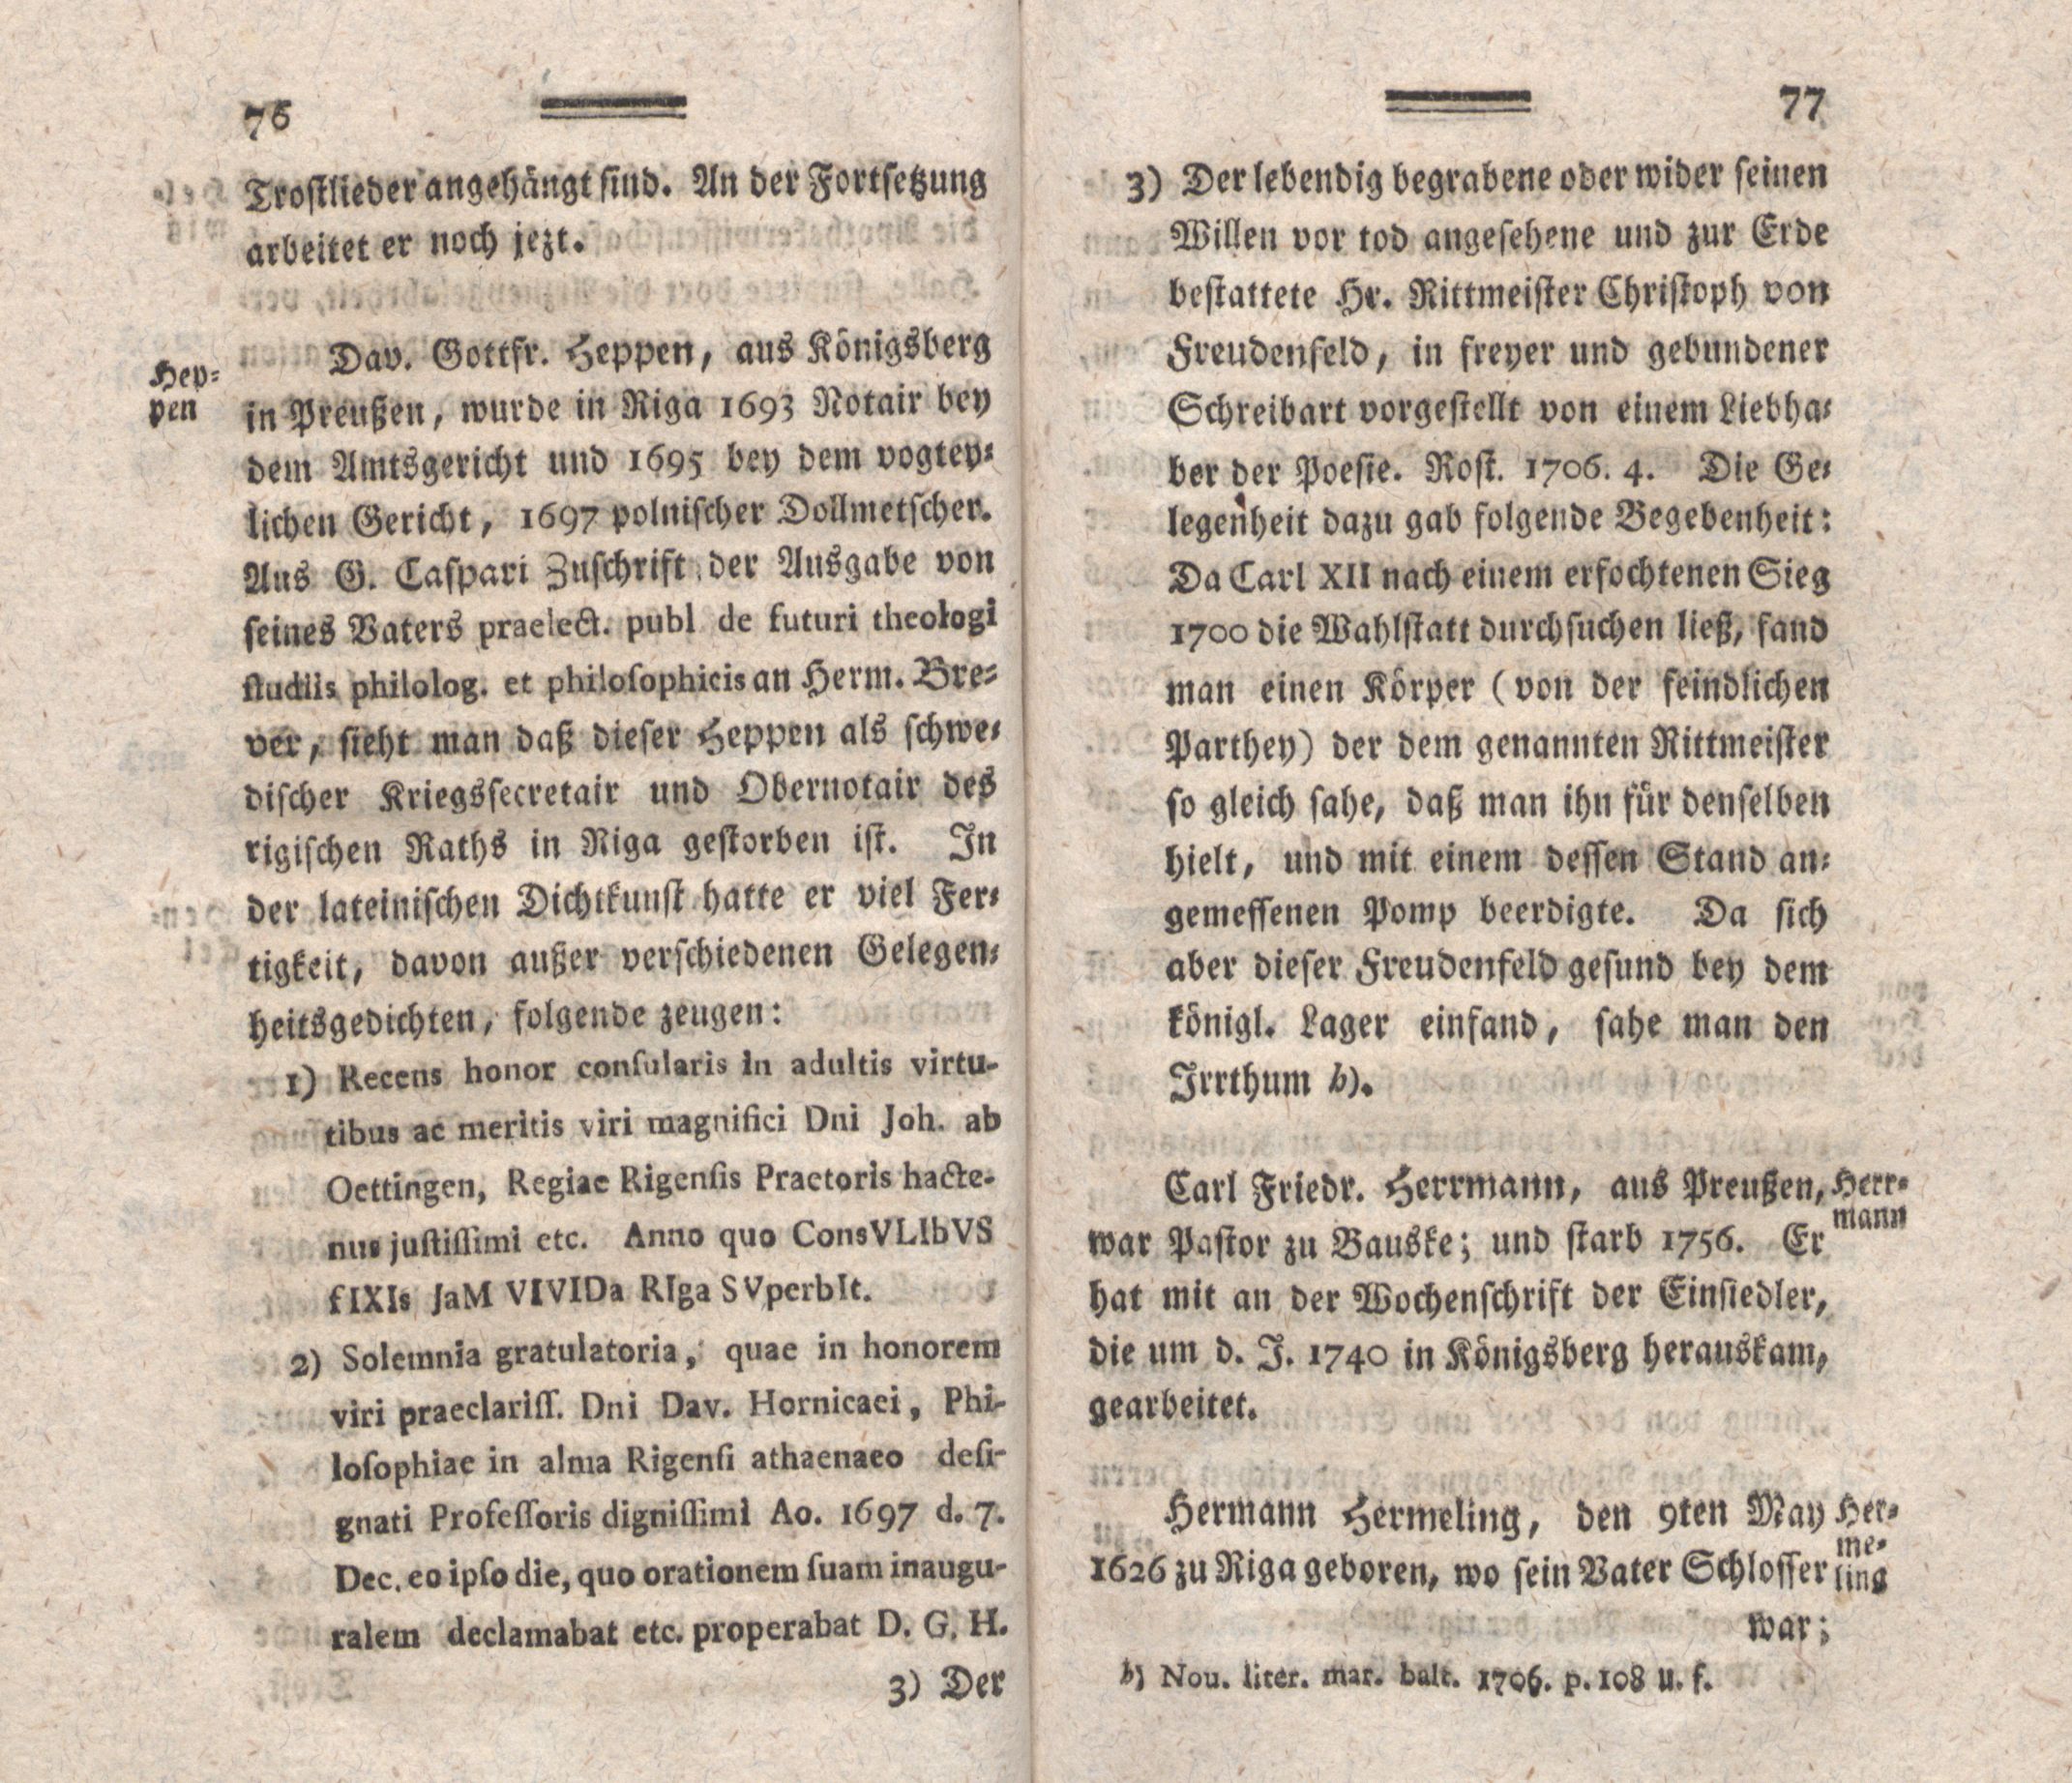 Nordische Miscellaneen [04] (1782) | 40. (76-77) Main body of text